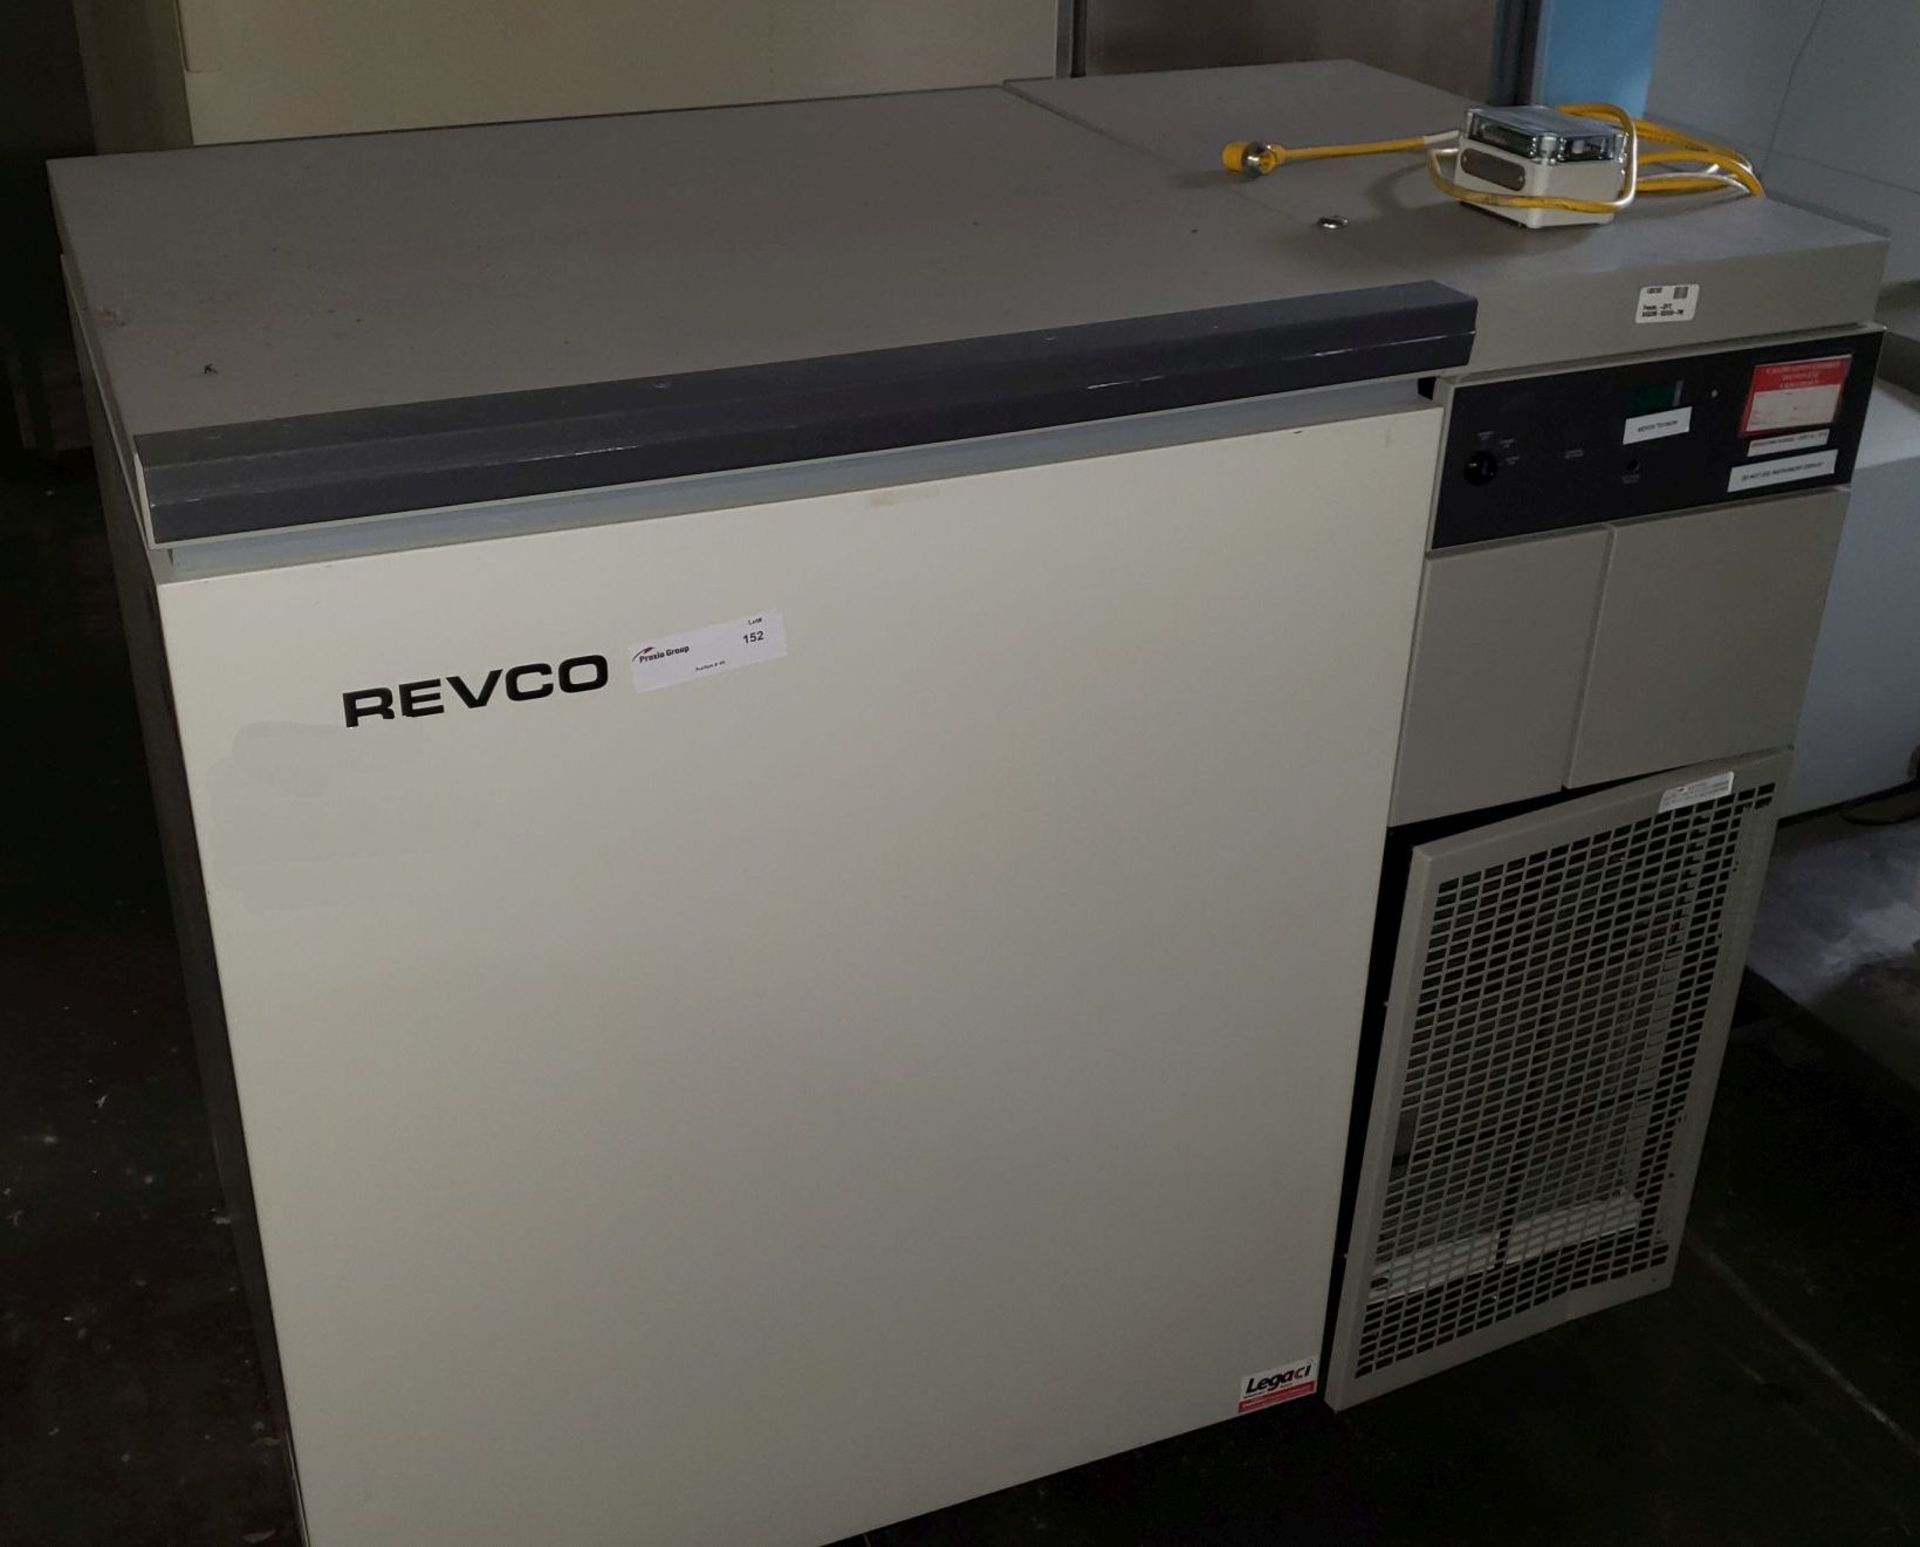 Revco chest freezer, model ULT750-3-A31, 115 volt, R404a refrigerant, serial# 020M-570259-PM.